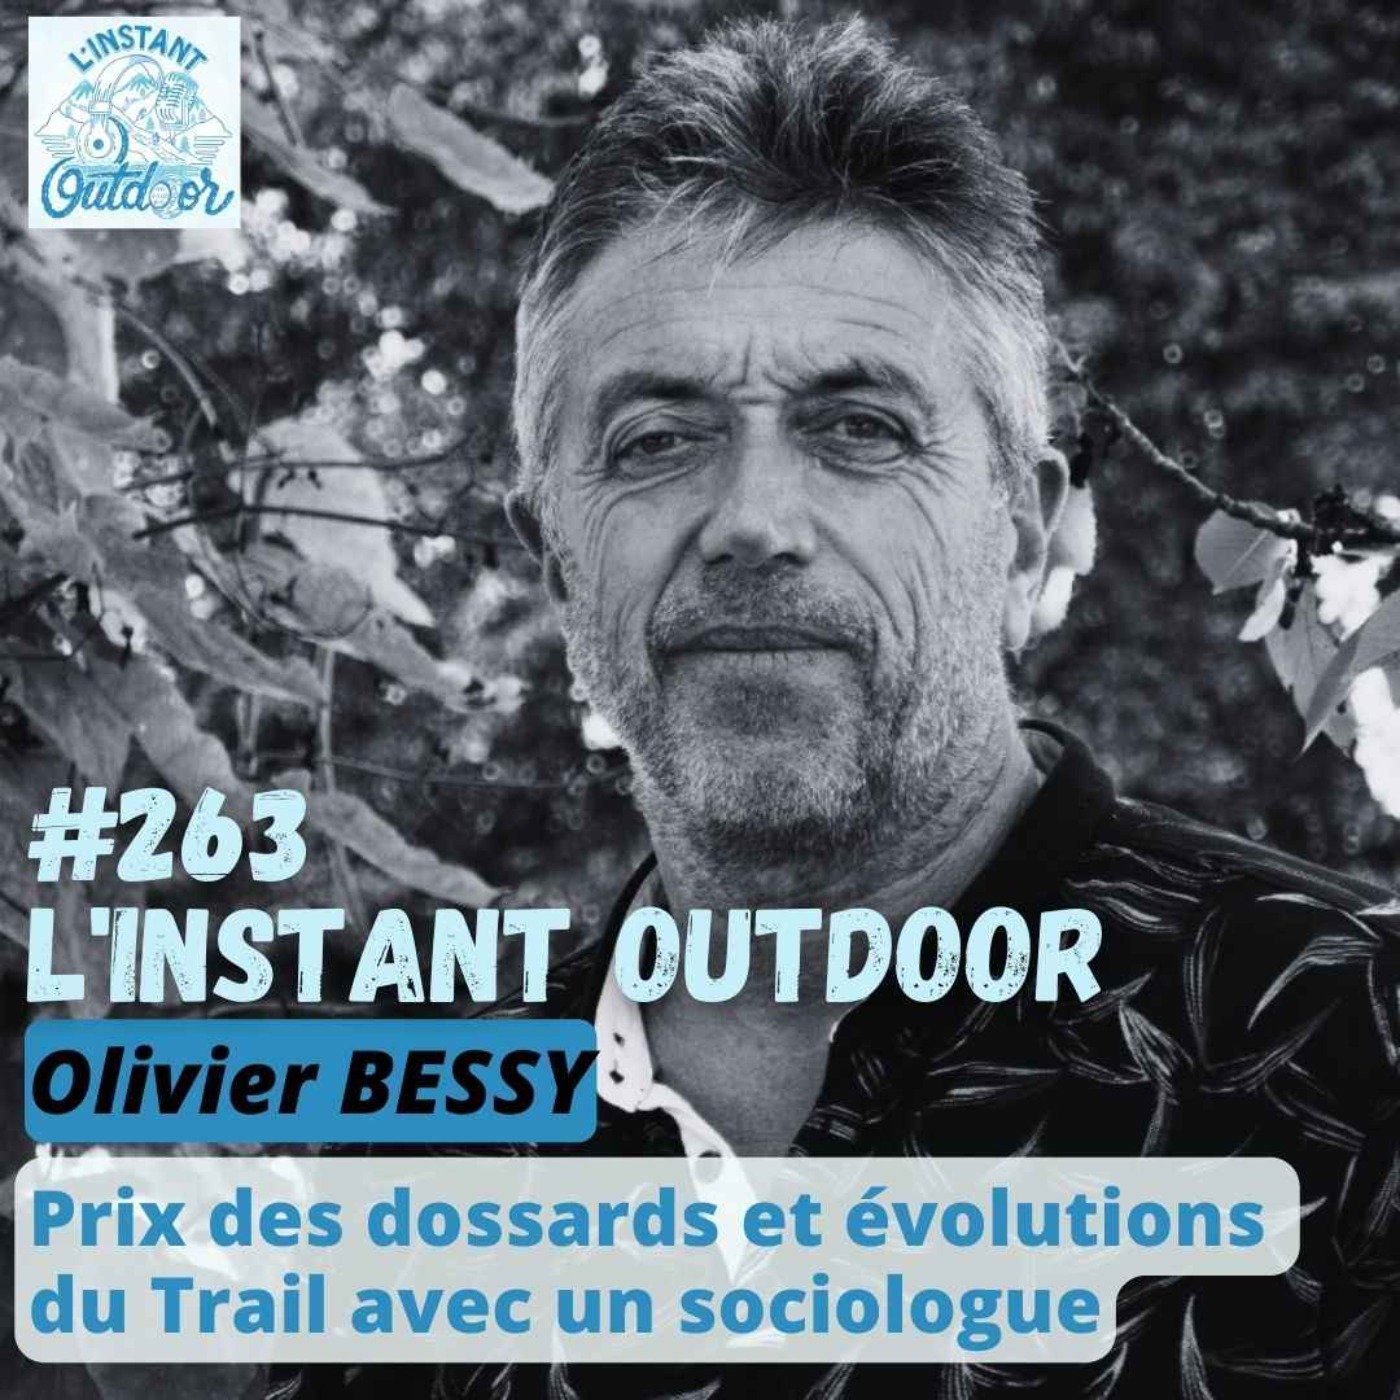 Olivier BESSY - Prix des dossards et évolutions  du Trail avec un sociologue